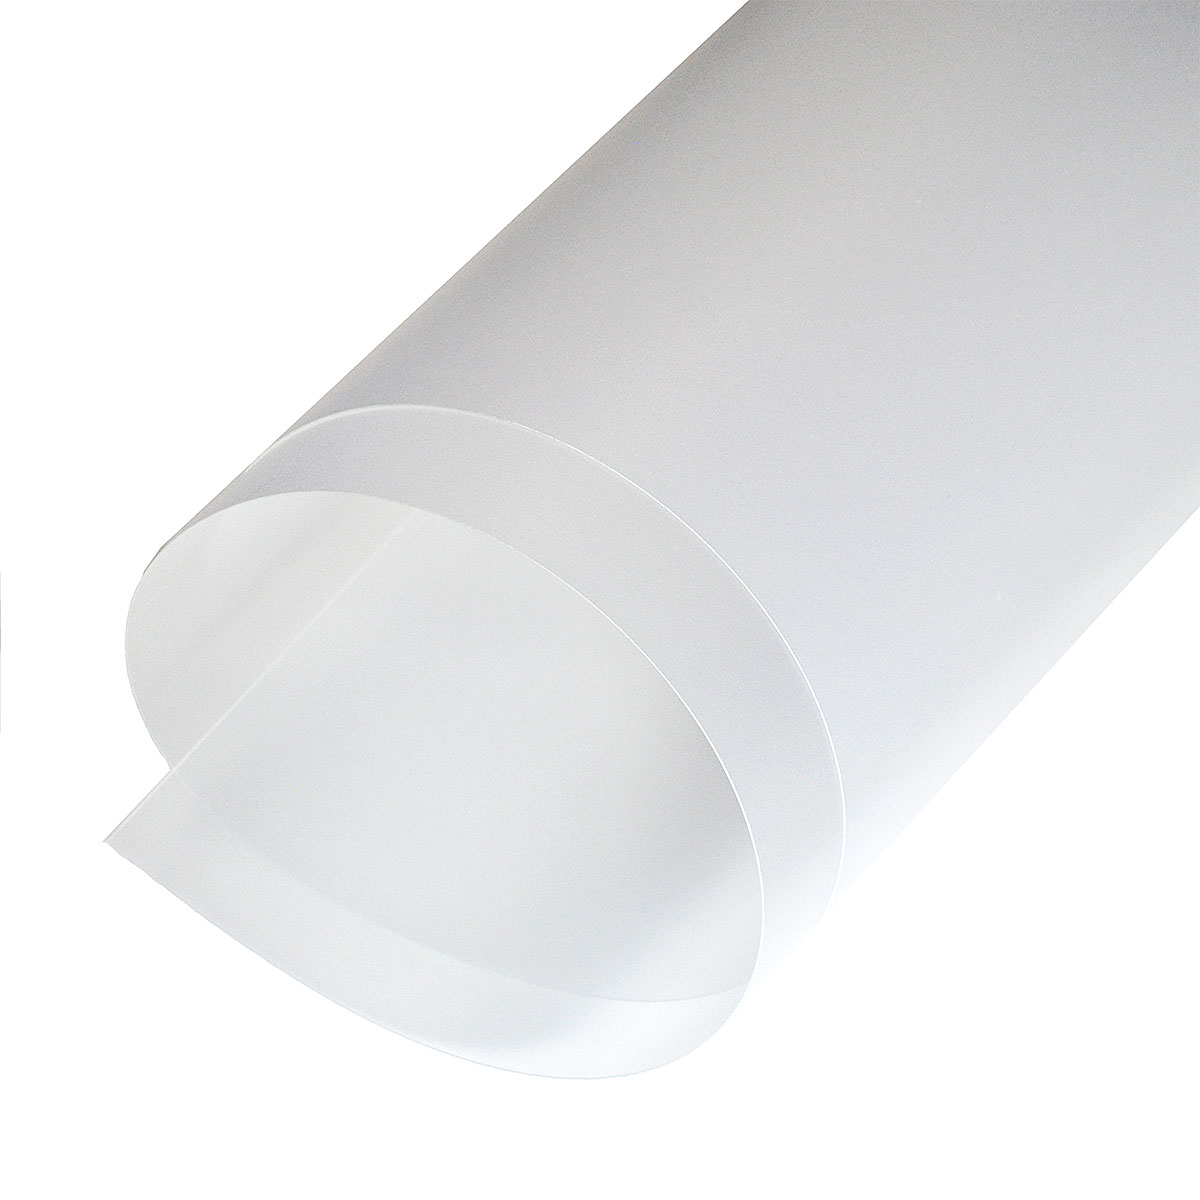 Пластик полипропилен 0,5х700х1000мм белый матовый непрозрачный по 200.00 руб от СП Комплект